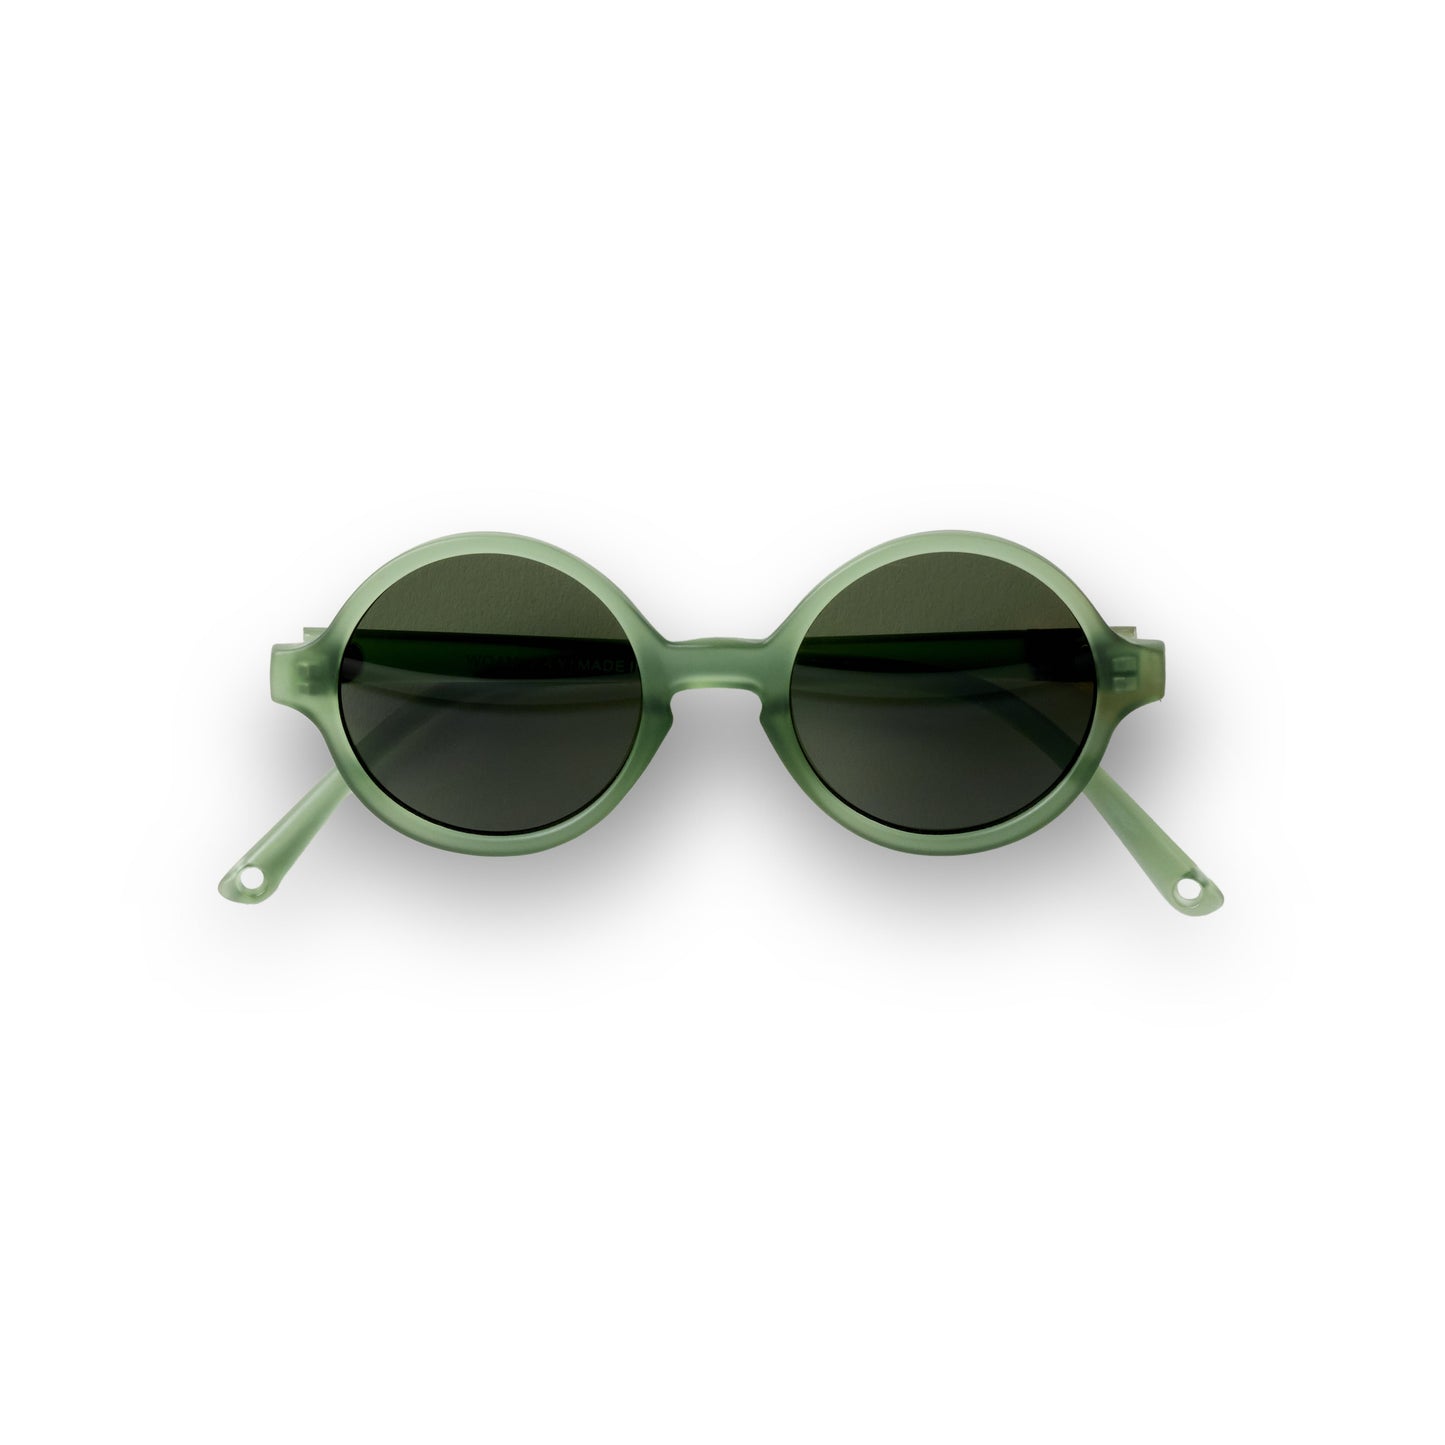 Okulary przeciwsłoneczne WOAM by Ki ET LA Green 0-2